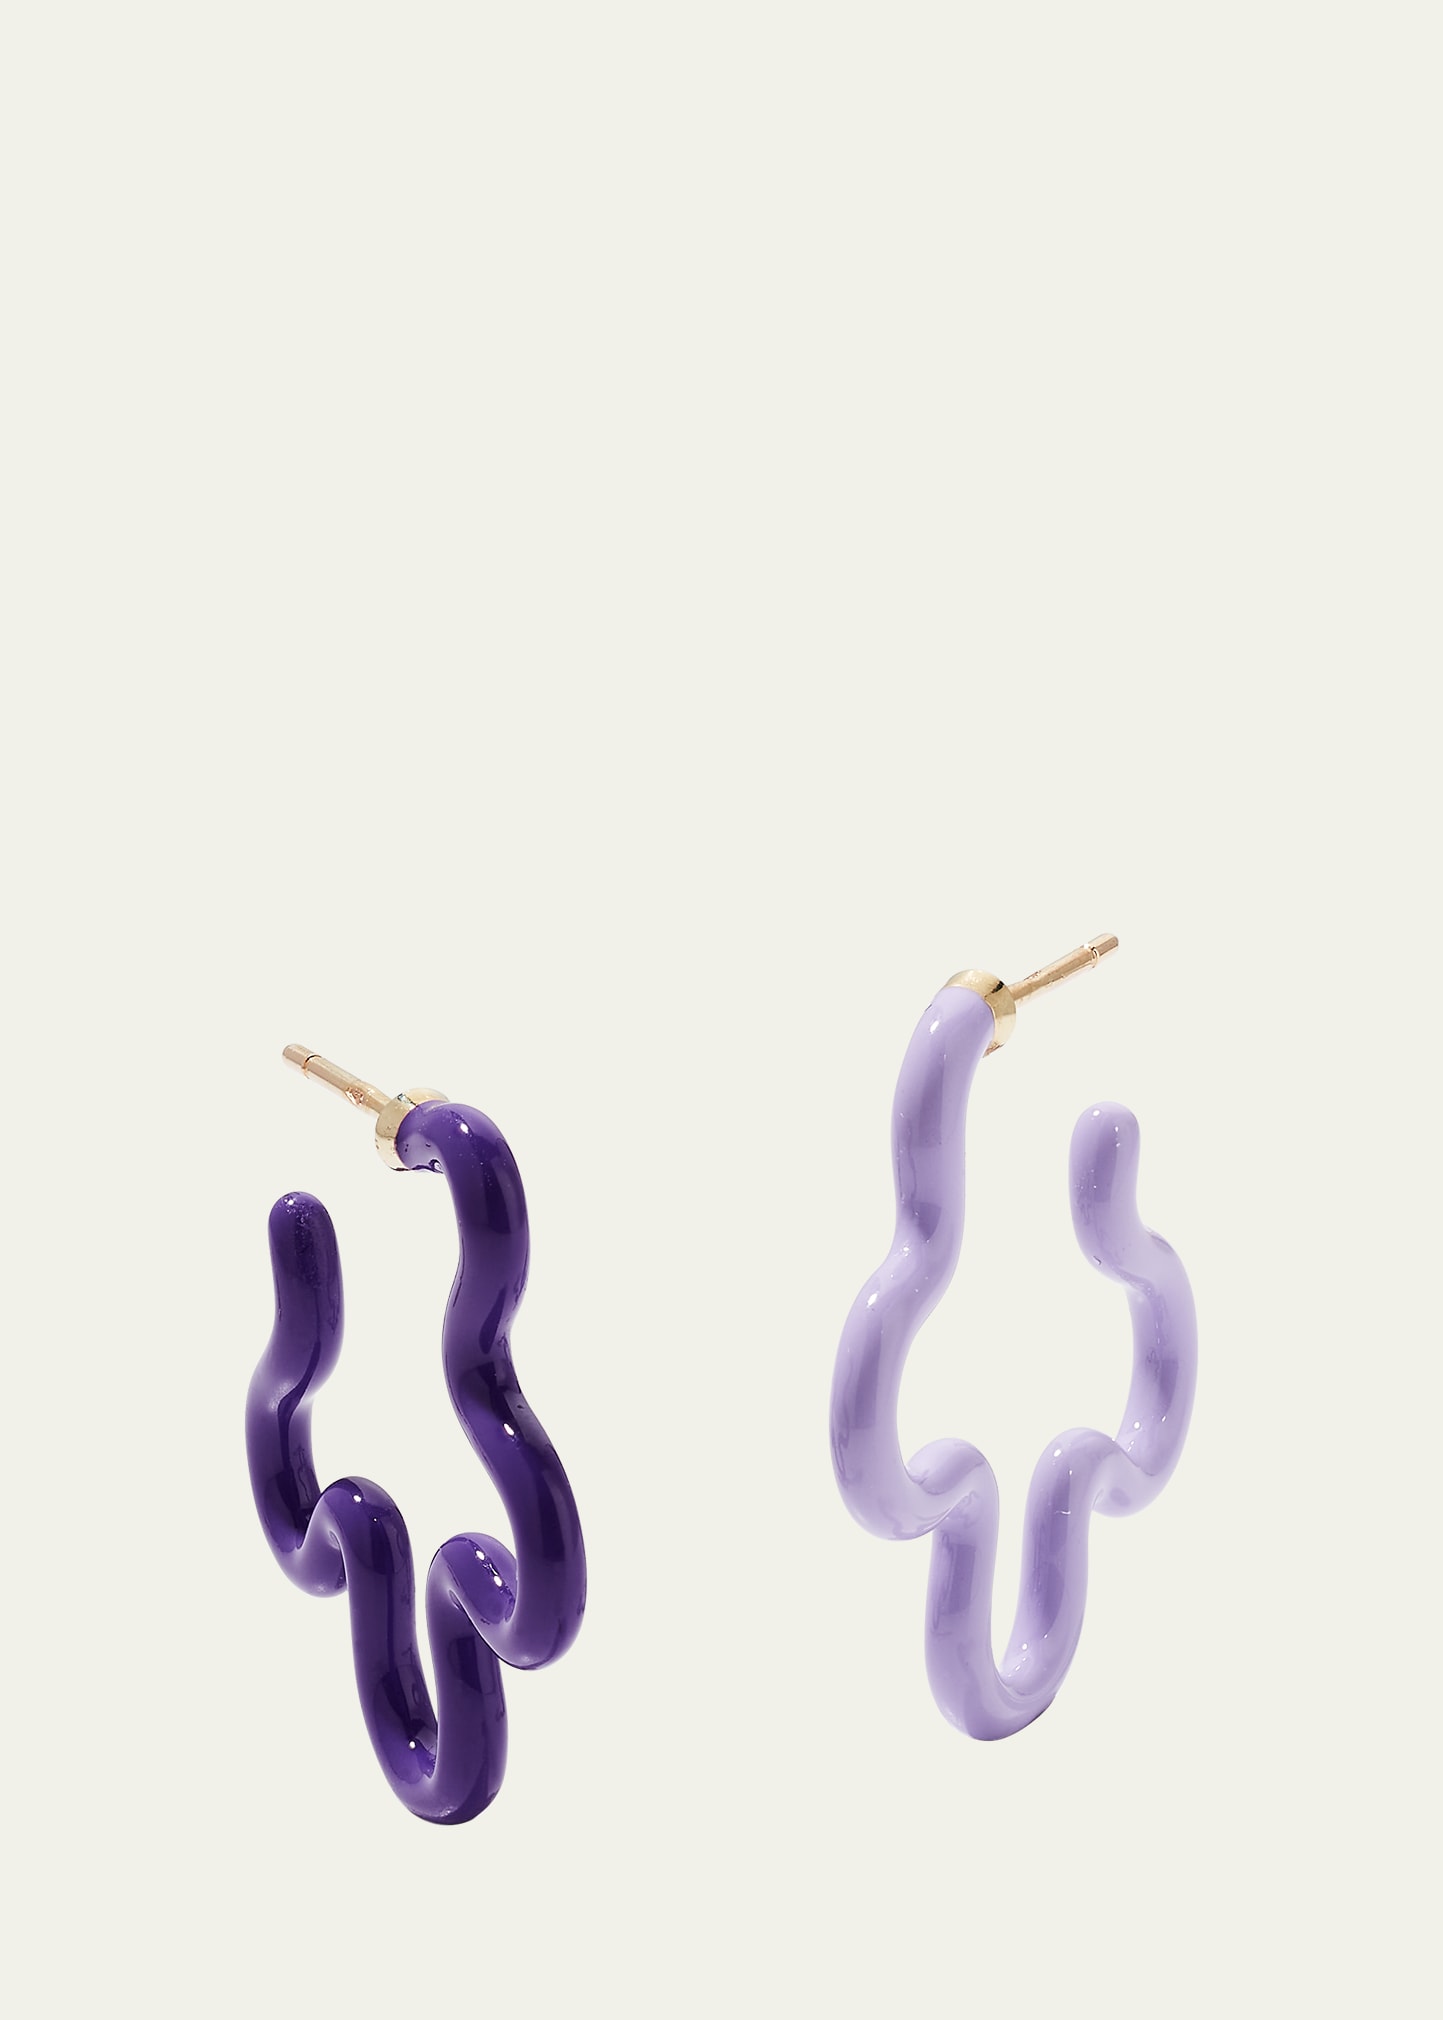 Two-Tone Asymmetrical Flower Small Hoop Earrings in Lavender and Purple Enamel